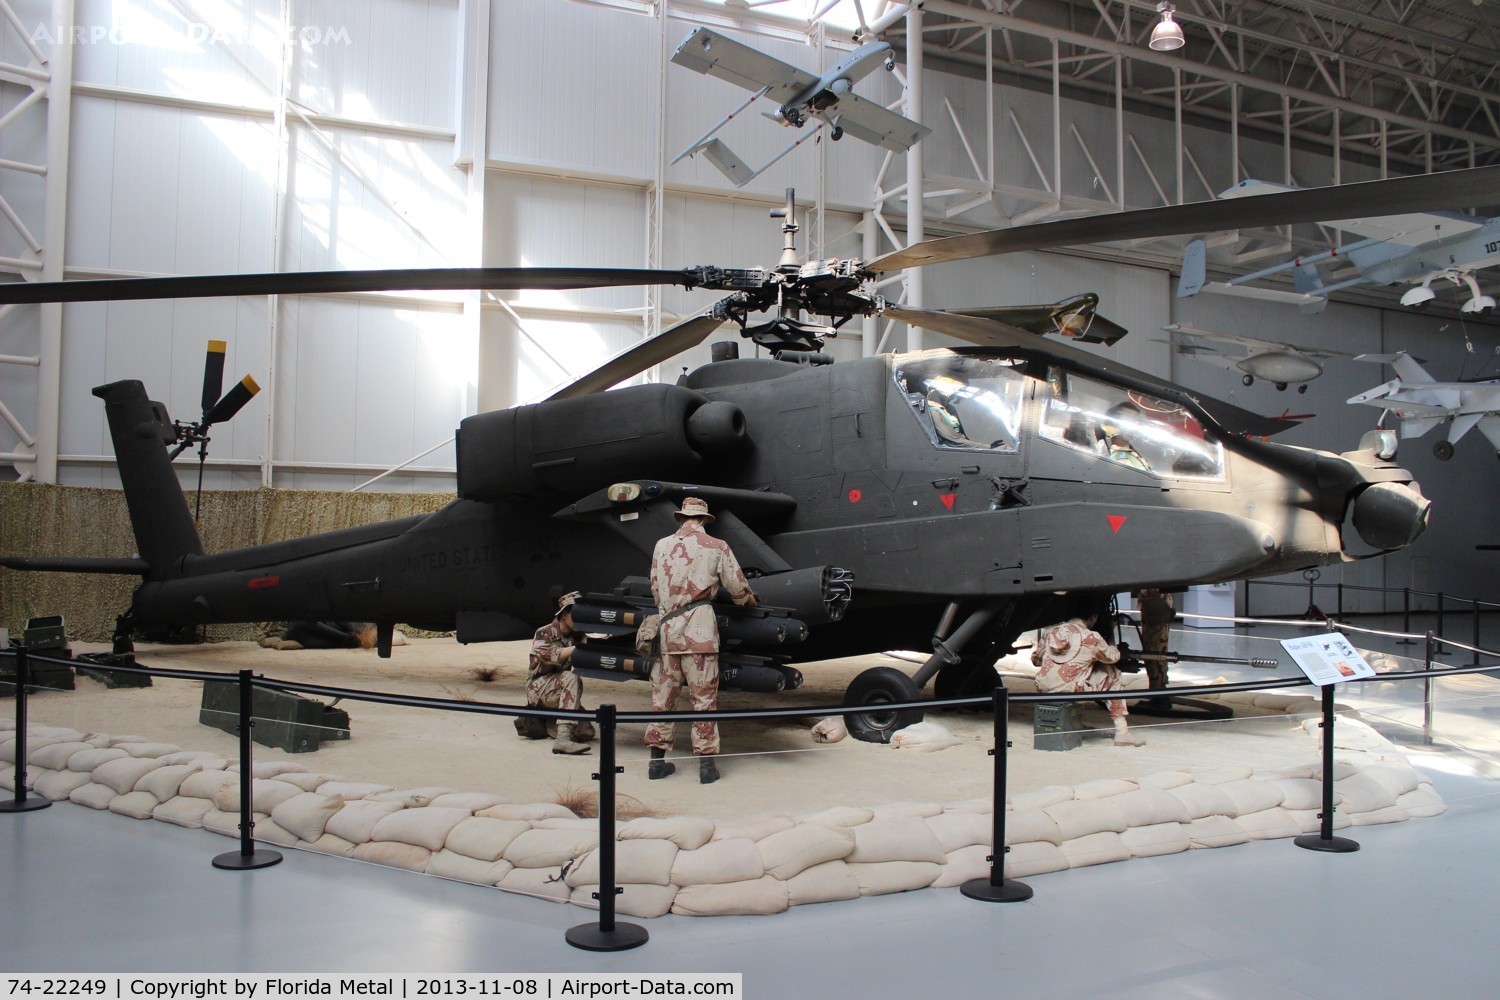 74-22249, 1975 Hughes YAH-64A Apache C/N AV.03, YAH-64A Apache at Army Aviation Museum